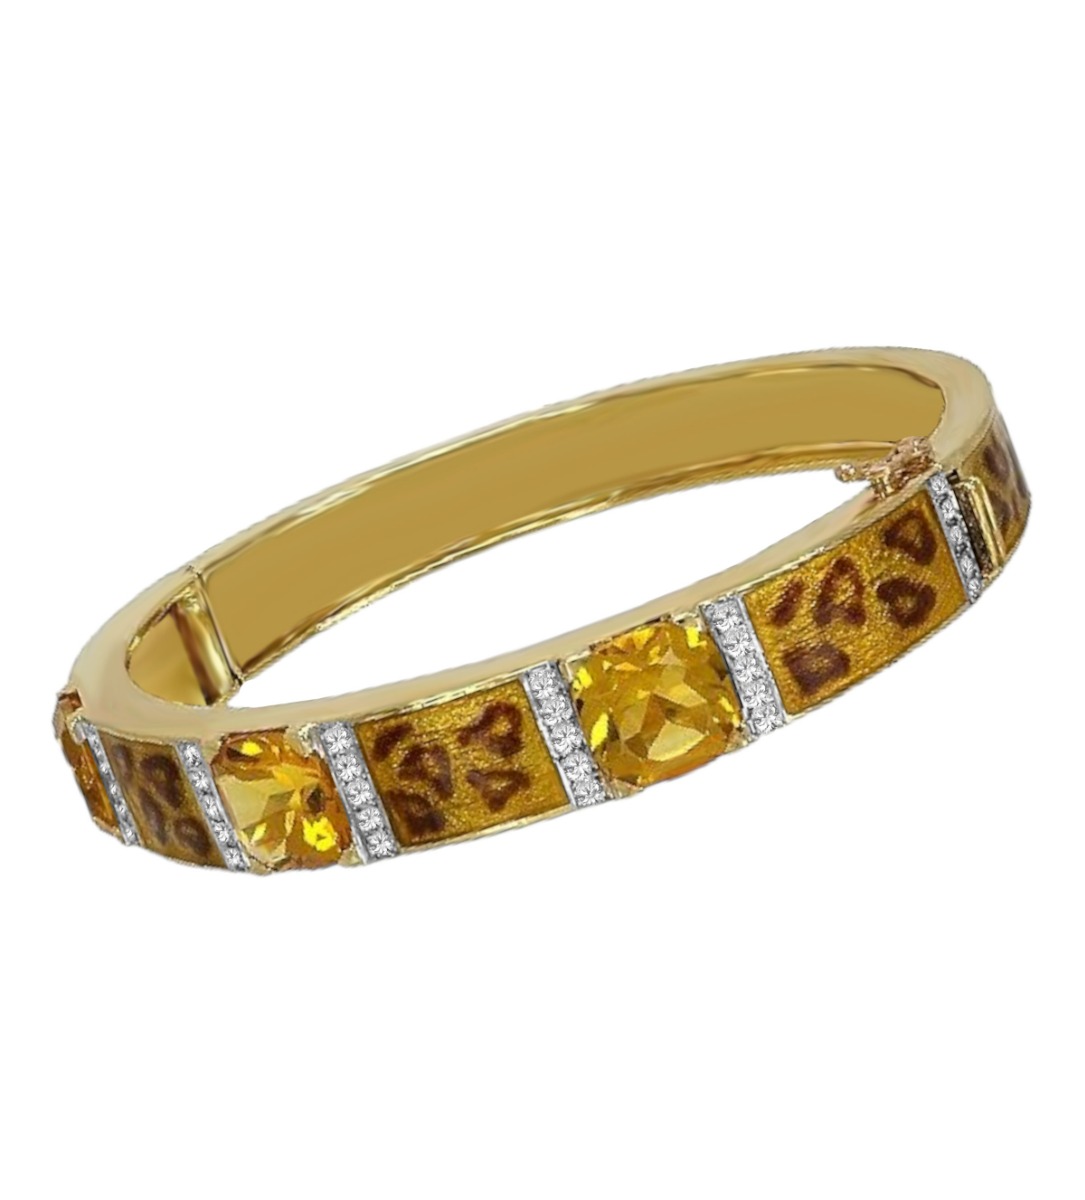 pulsera de oro citrinos y diamantes con esmalte a fuego piel de jaguar foto en plano 111_JAGUAR-PUL_01